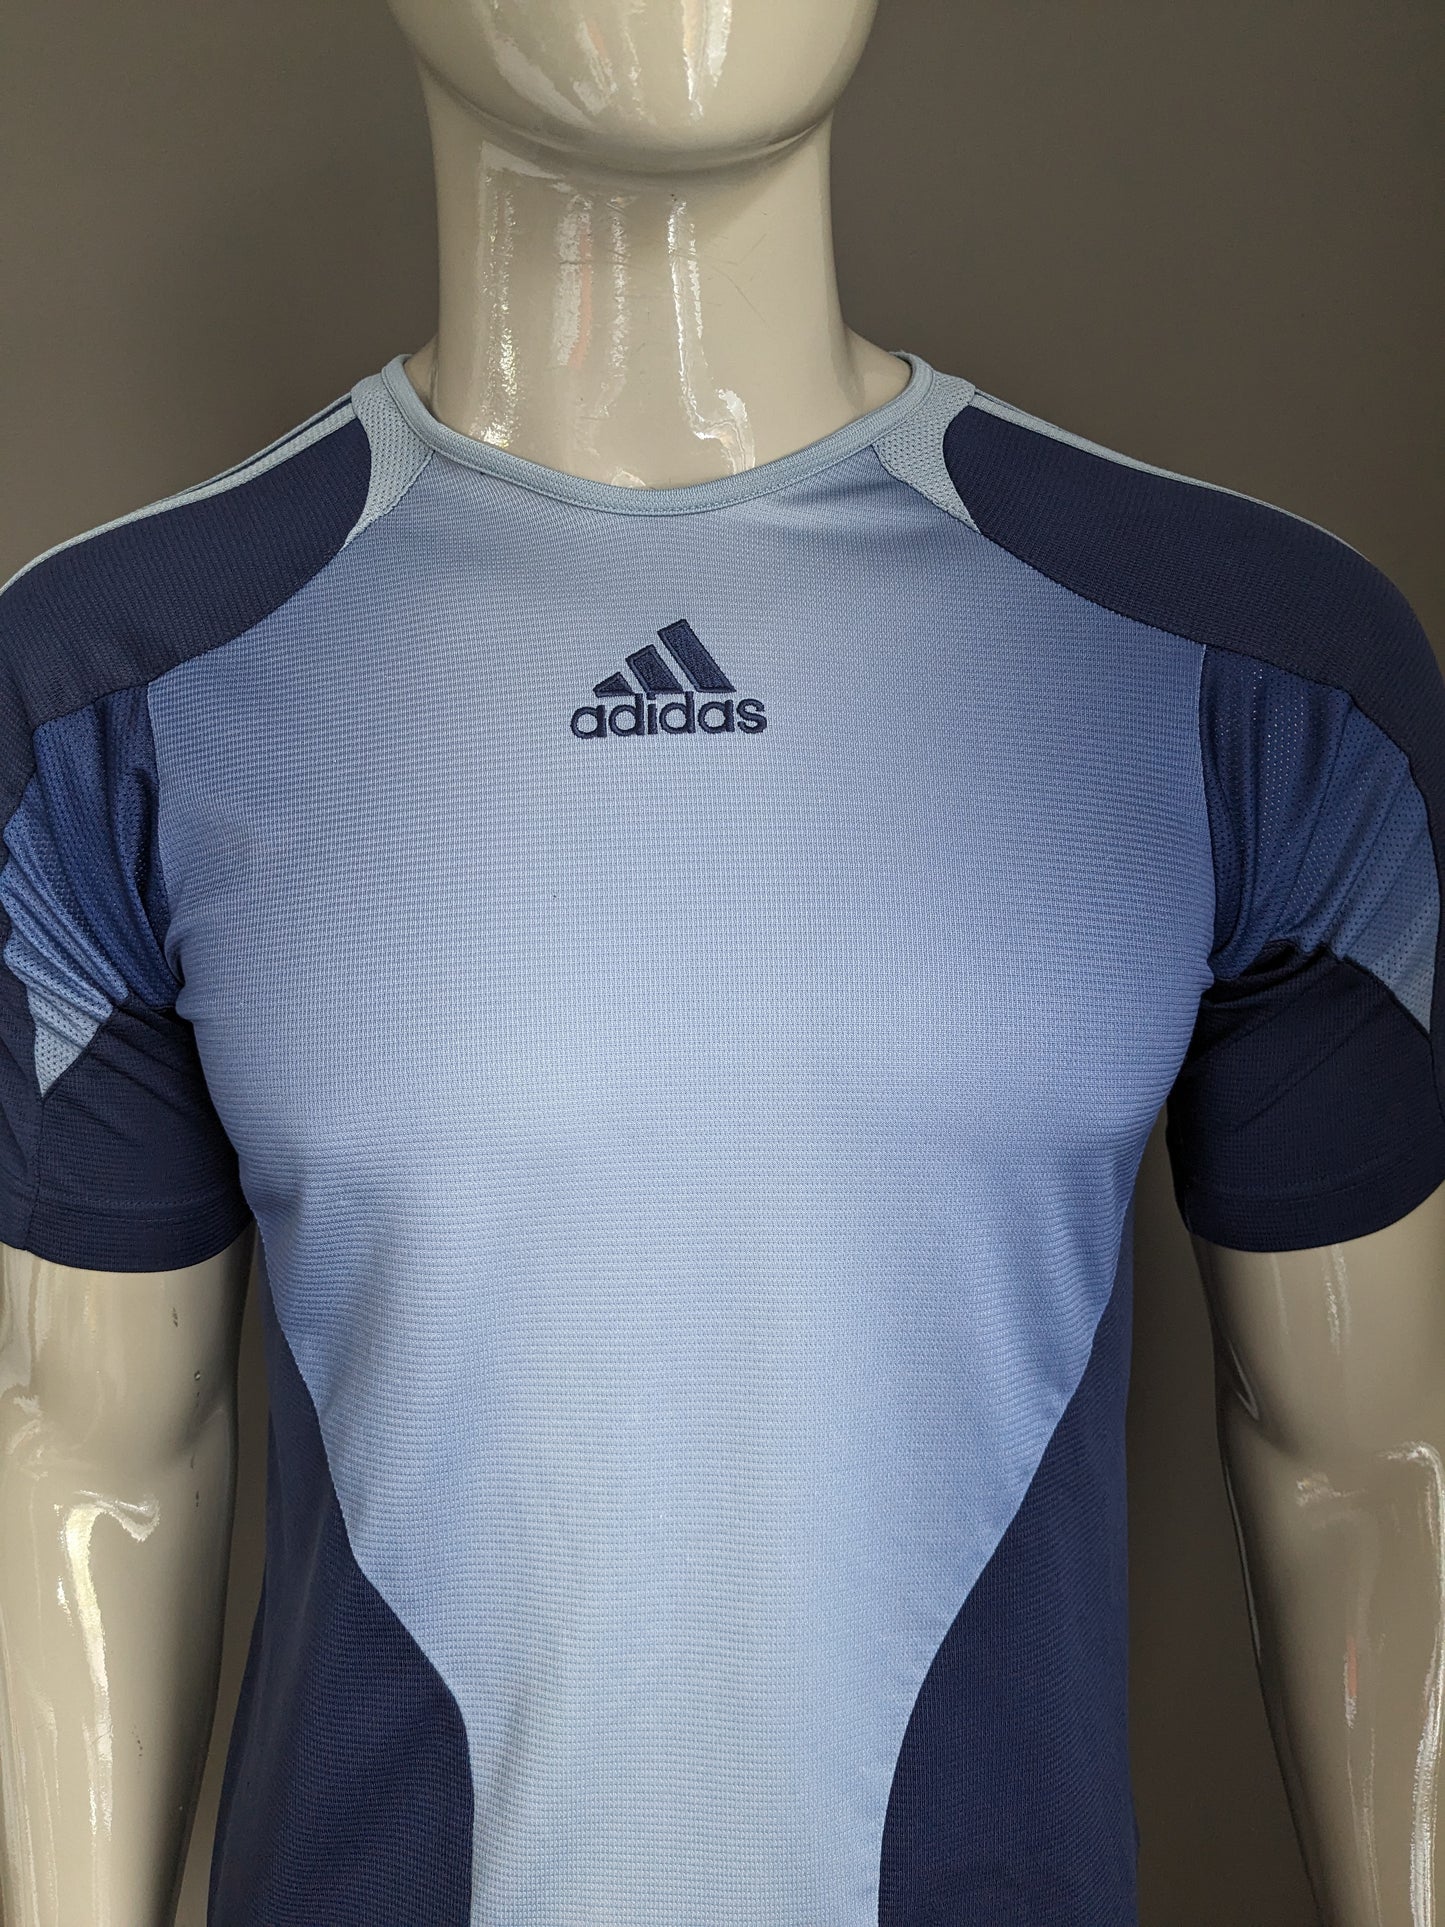 Camisa de Adidas Sport. Color azul. Tamaño S.